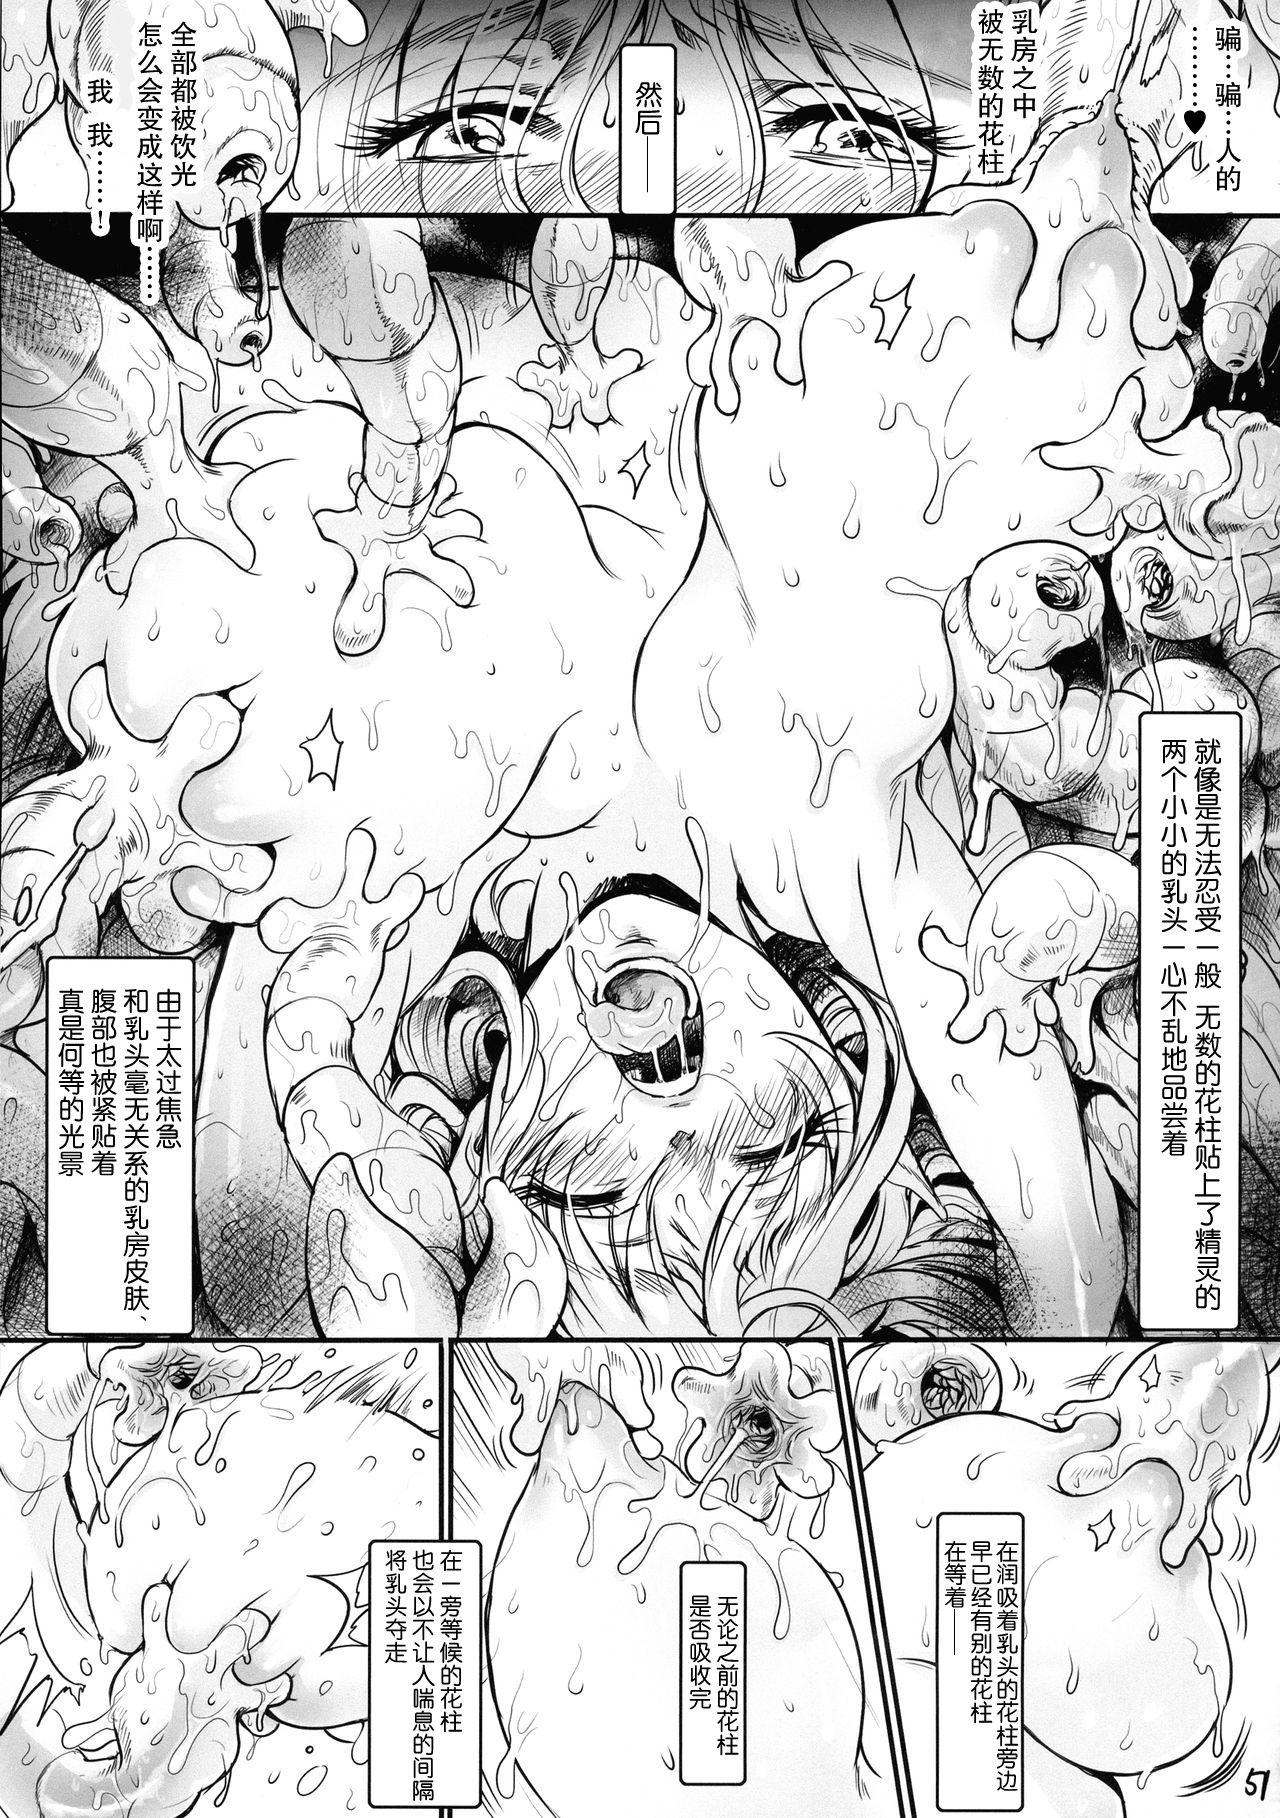 Botsu Manga "Kawaii Okusama" no Gokuyou Matome Hon + α 51